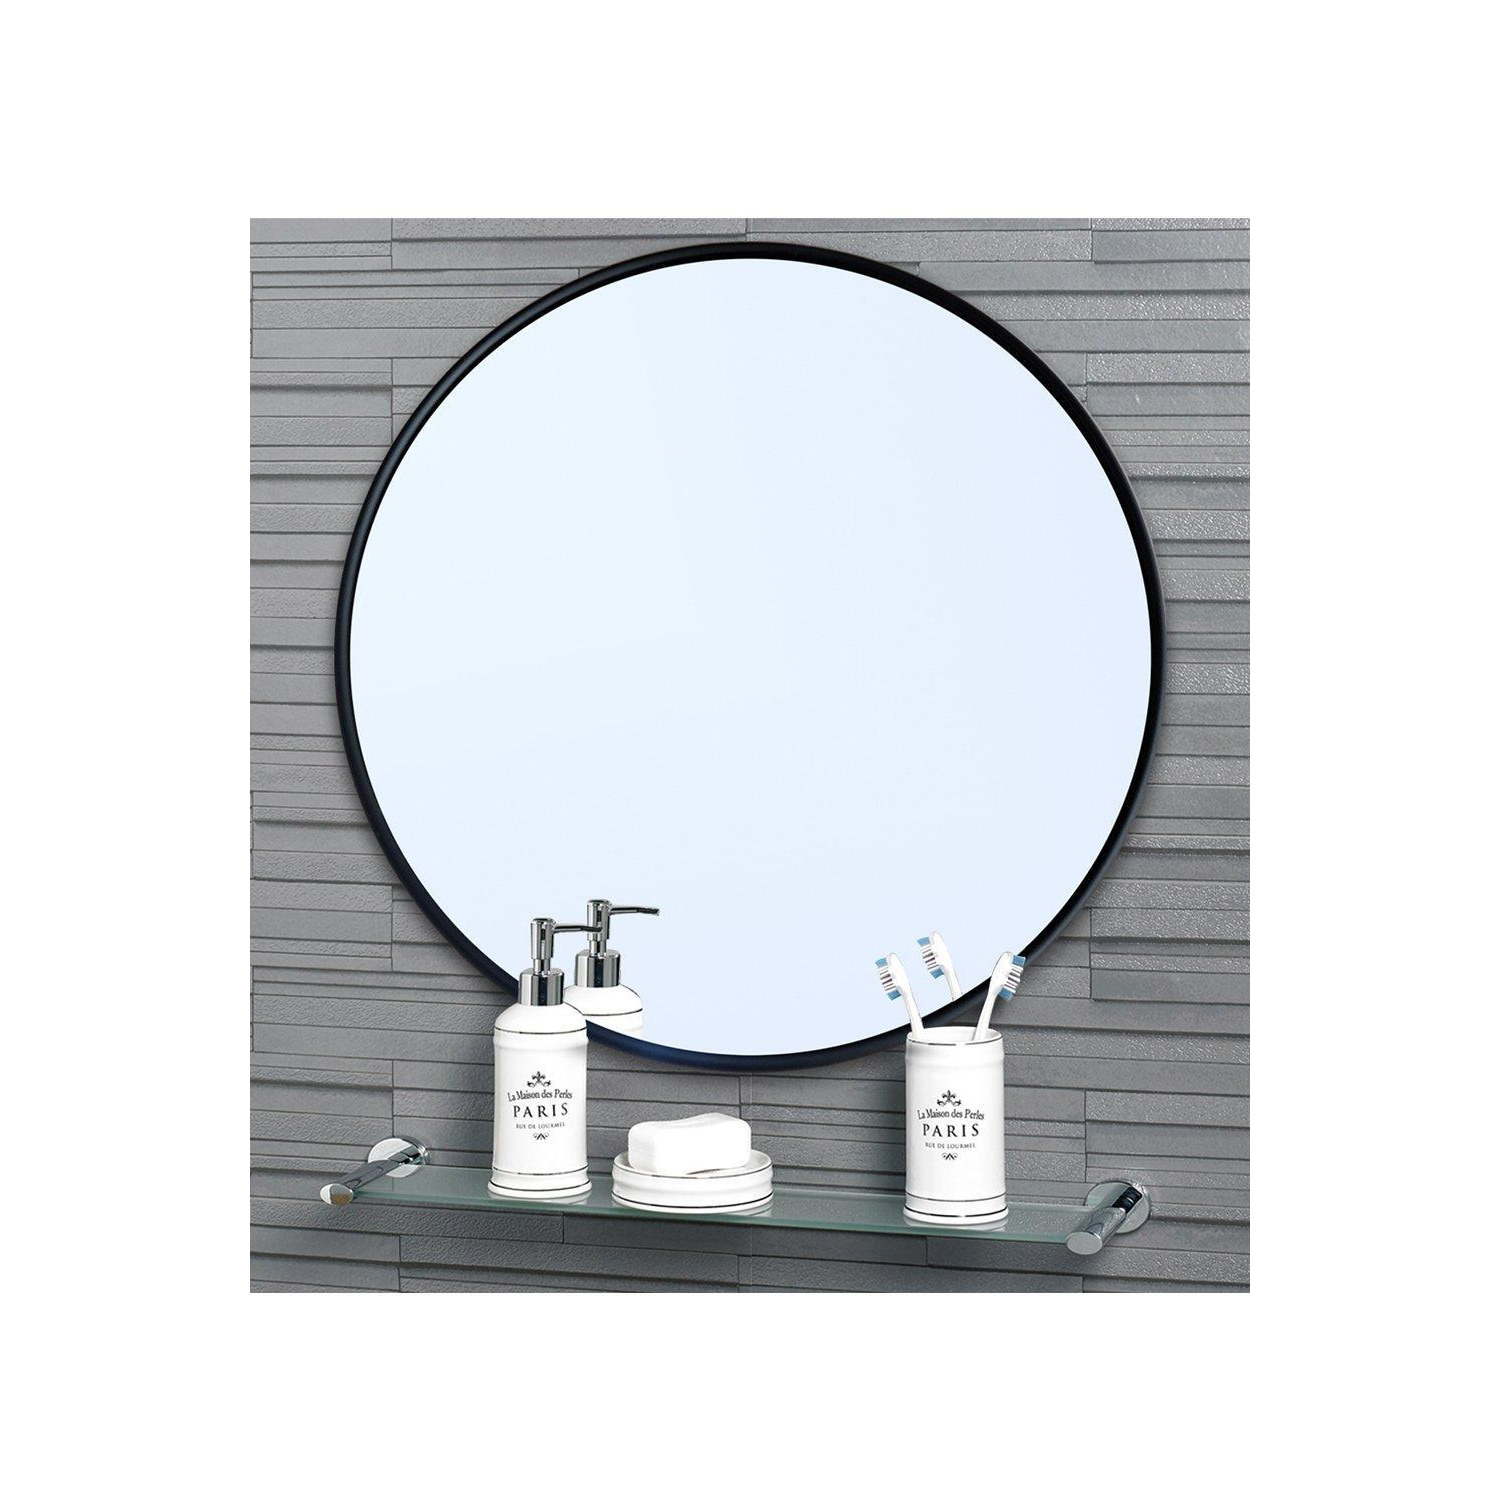 'Portabello' Round Mirror Small 40cm Dia - image 1